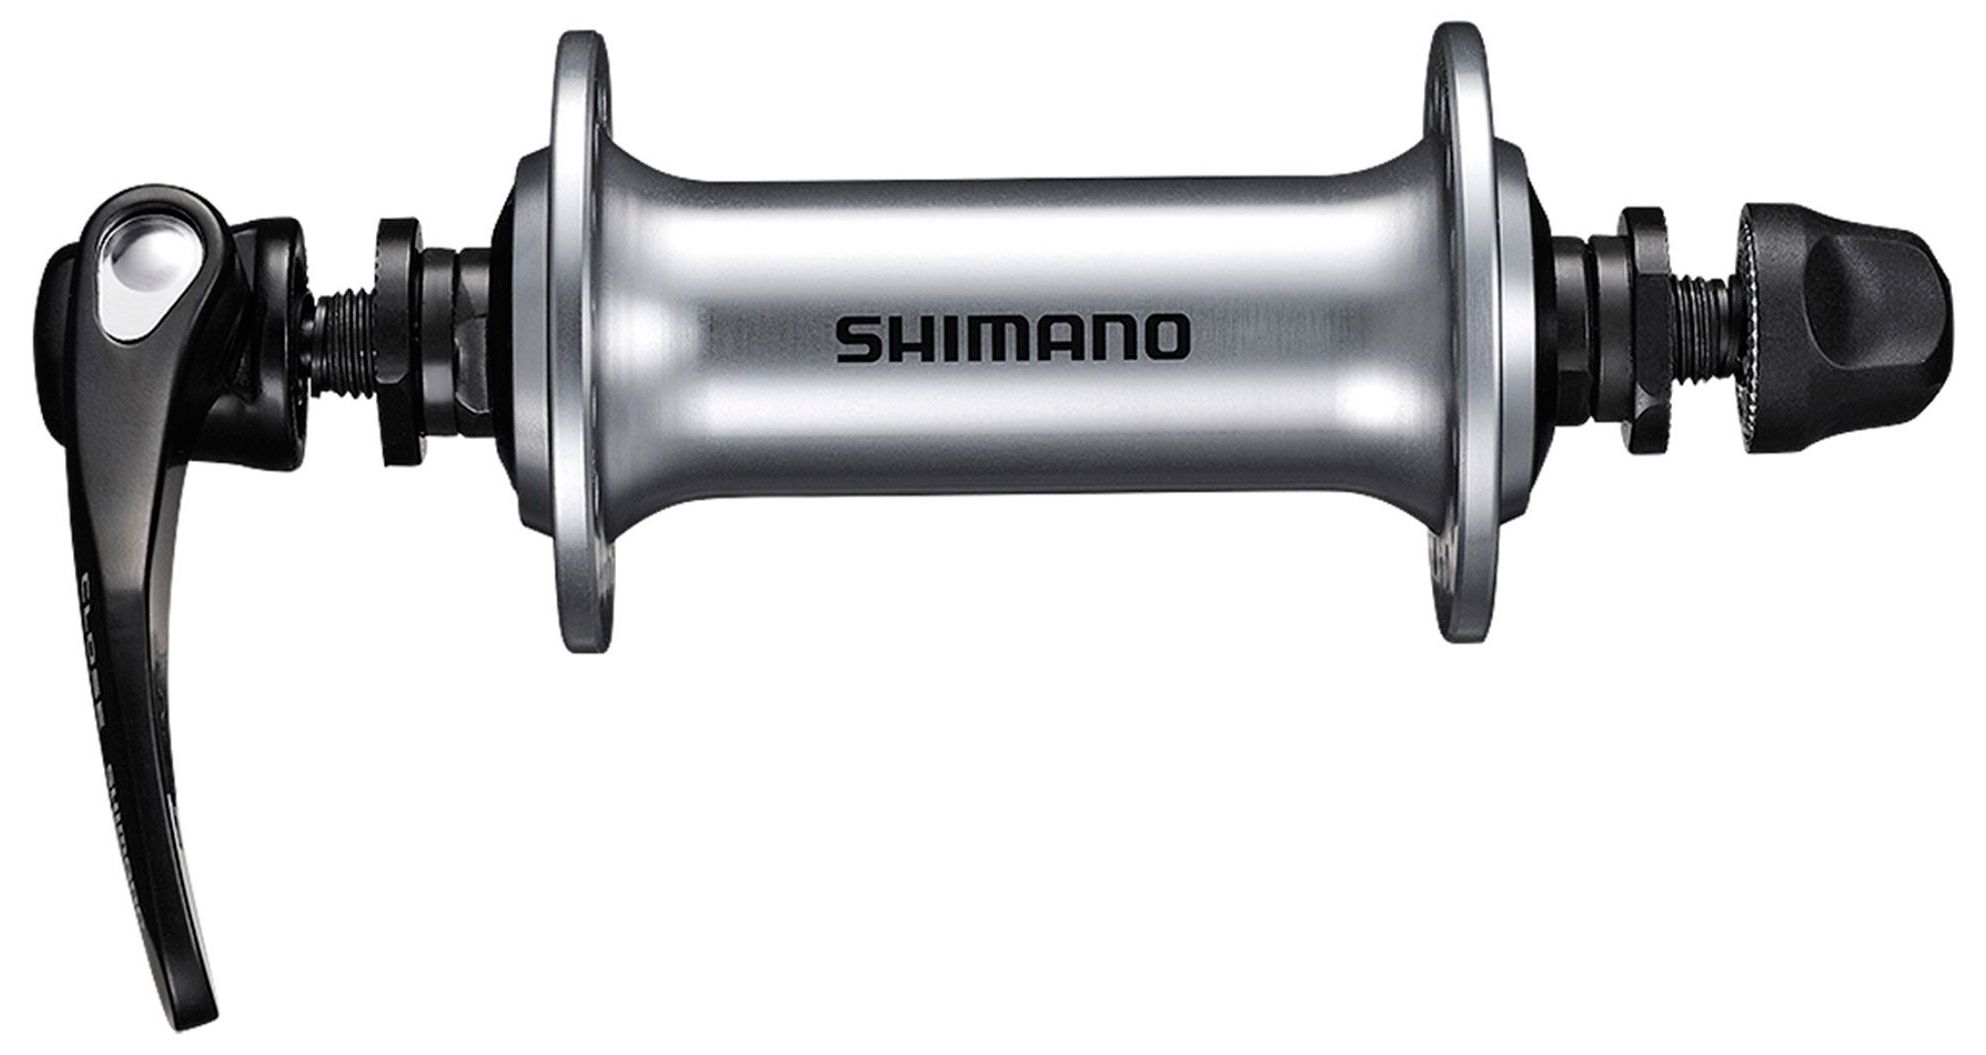  Втулка для велосипеда Shimano RS400, 32 отв. (EHBRS400BS)